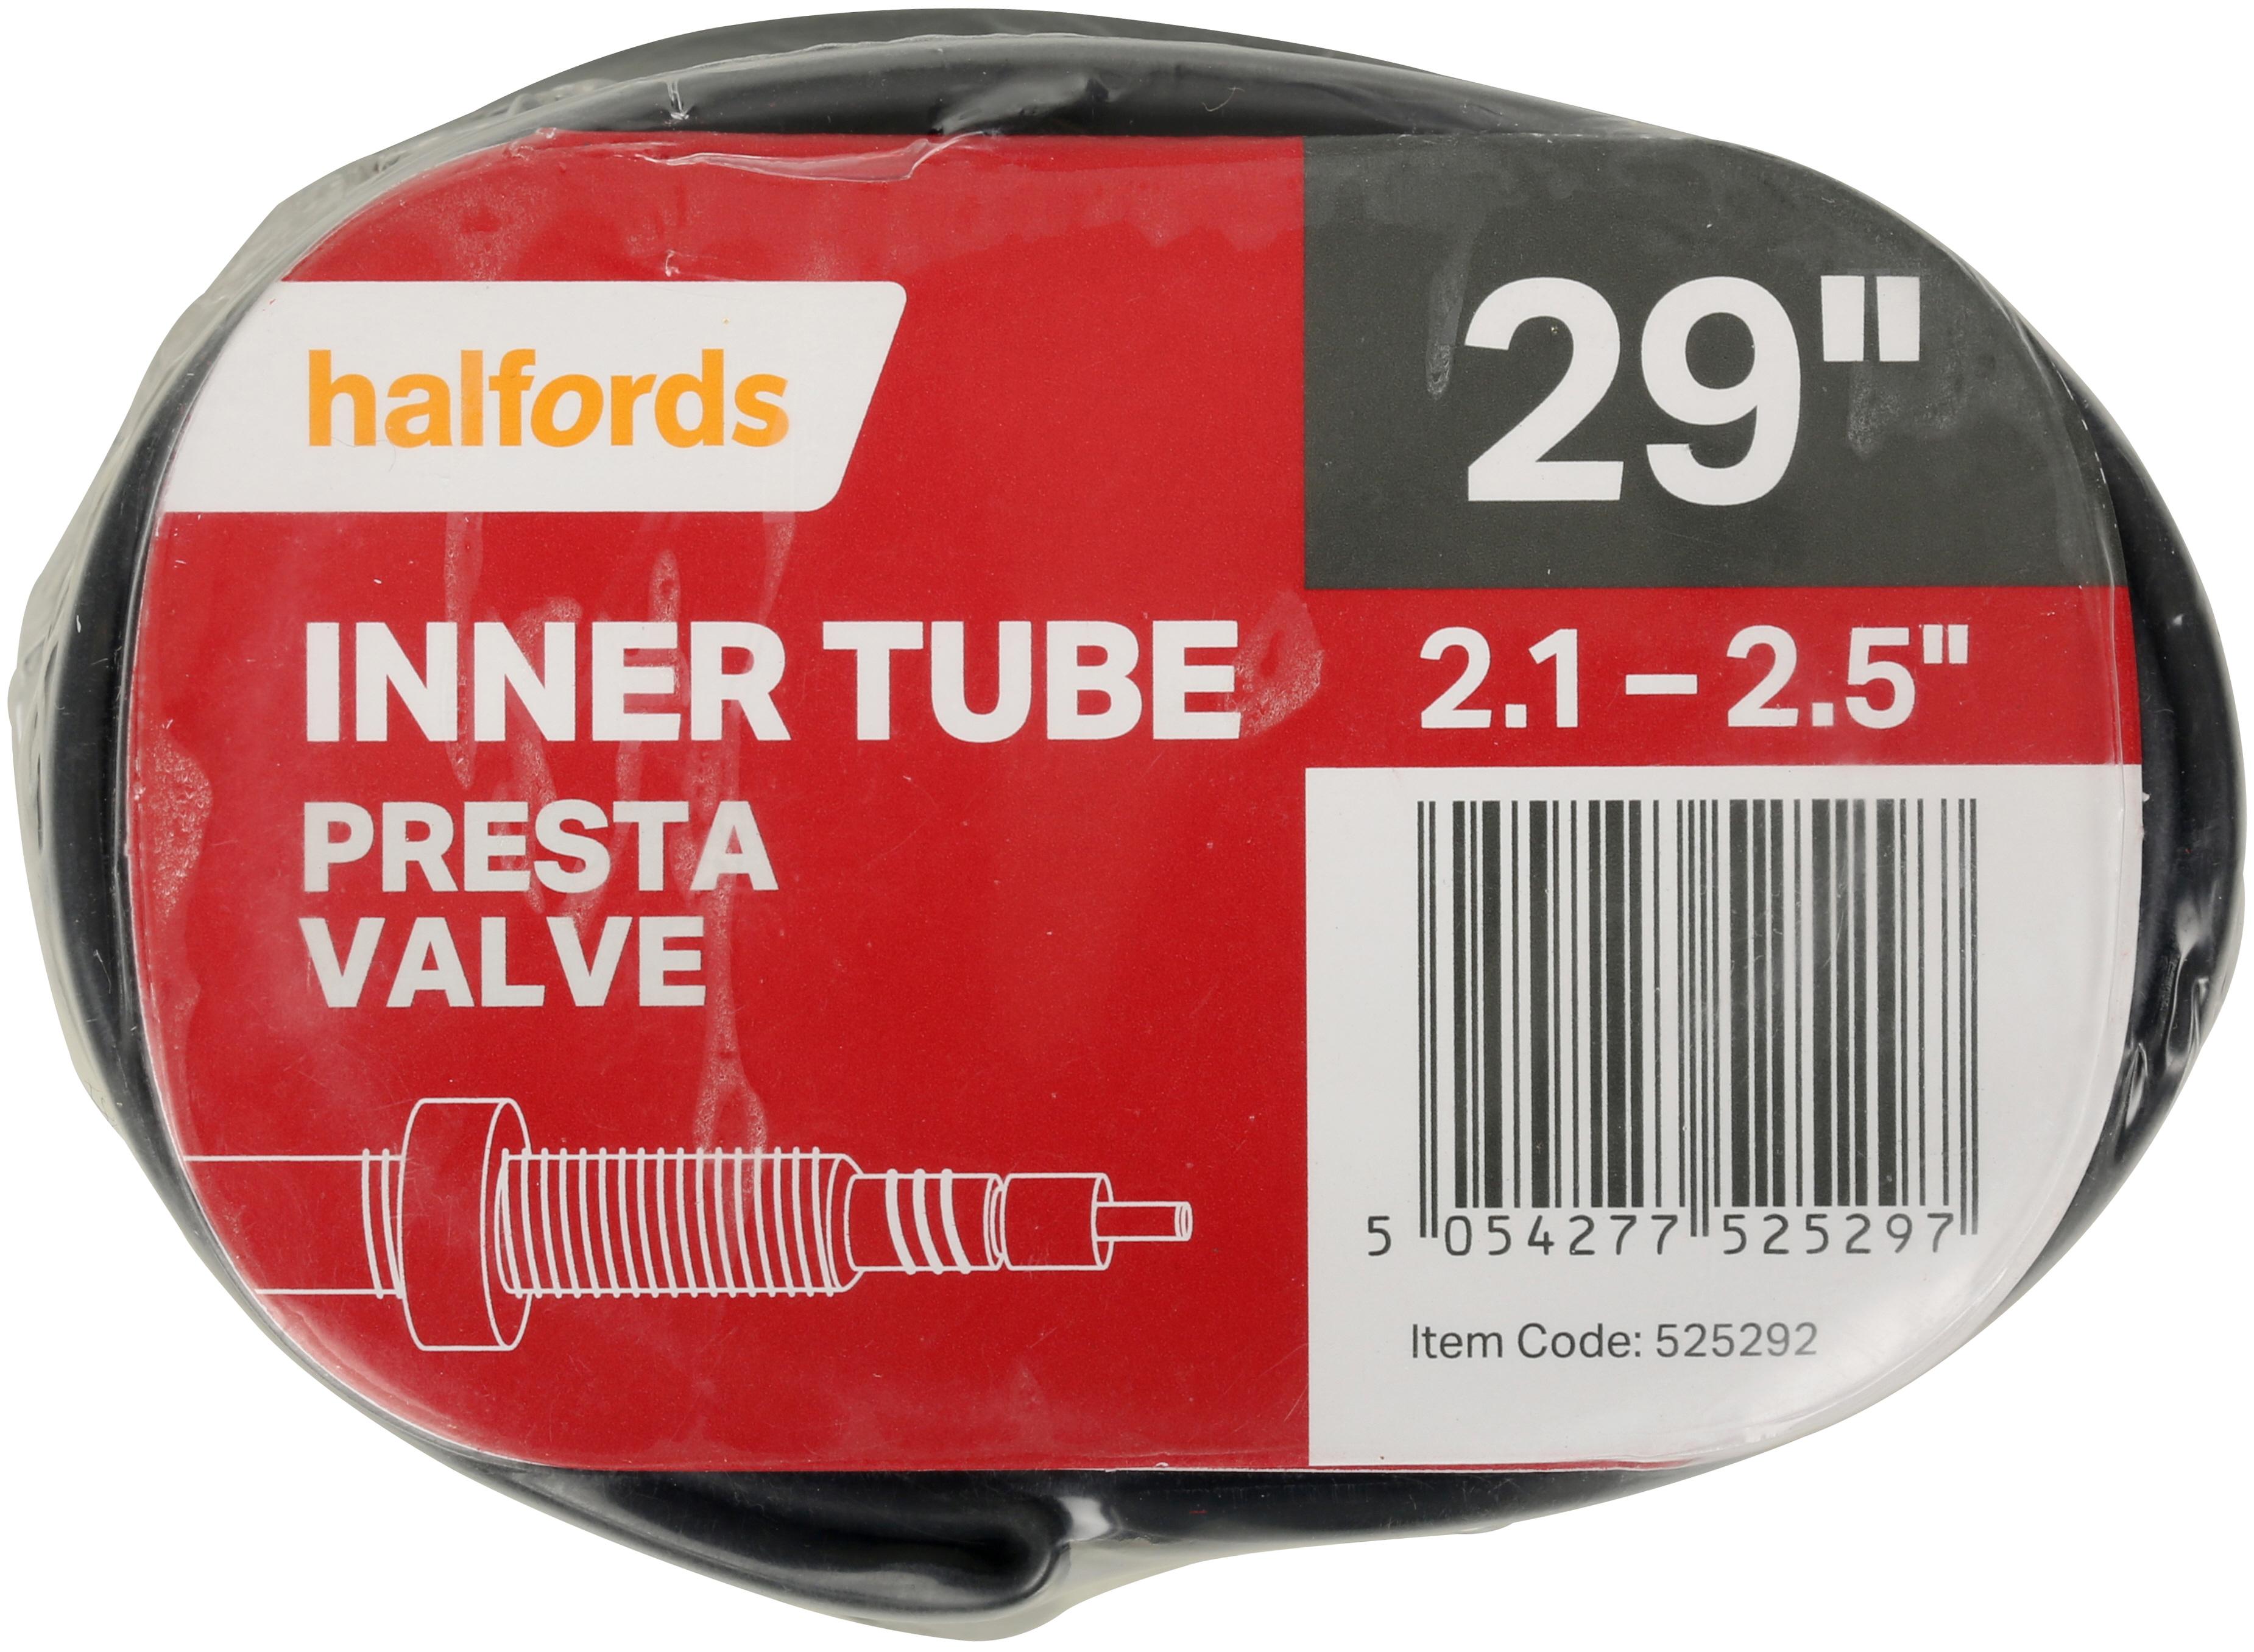 inner tube presta valve